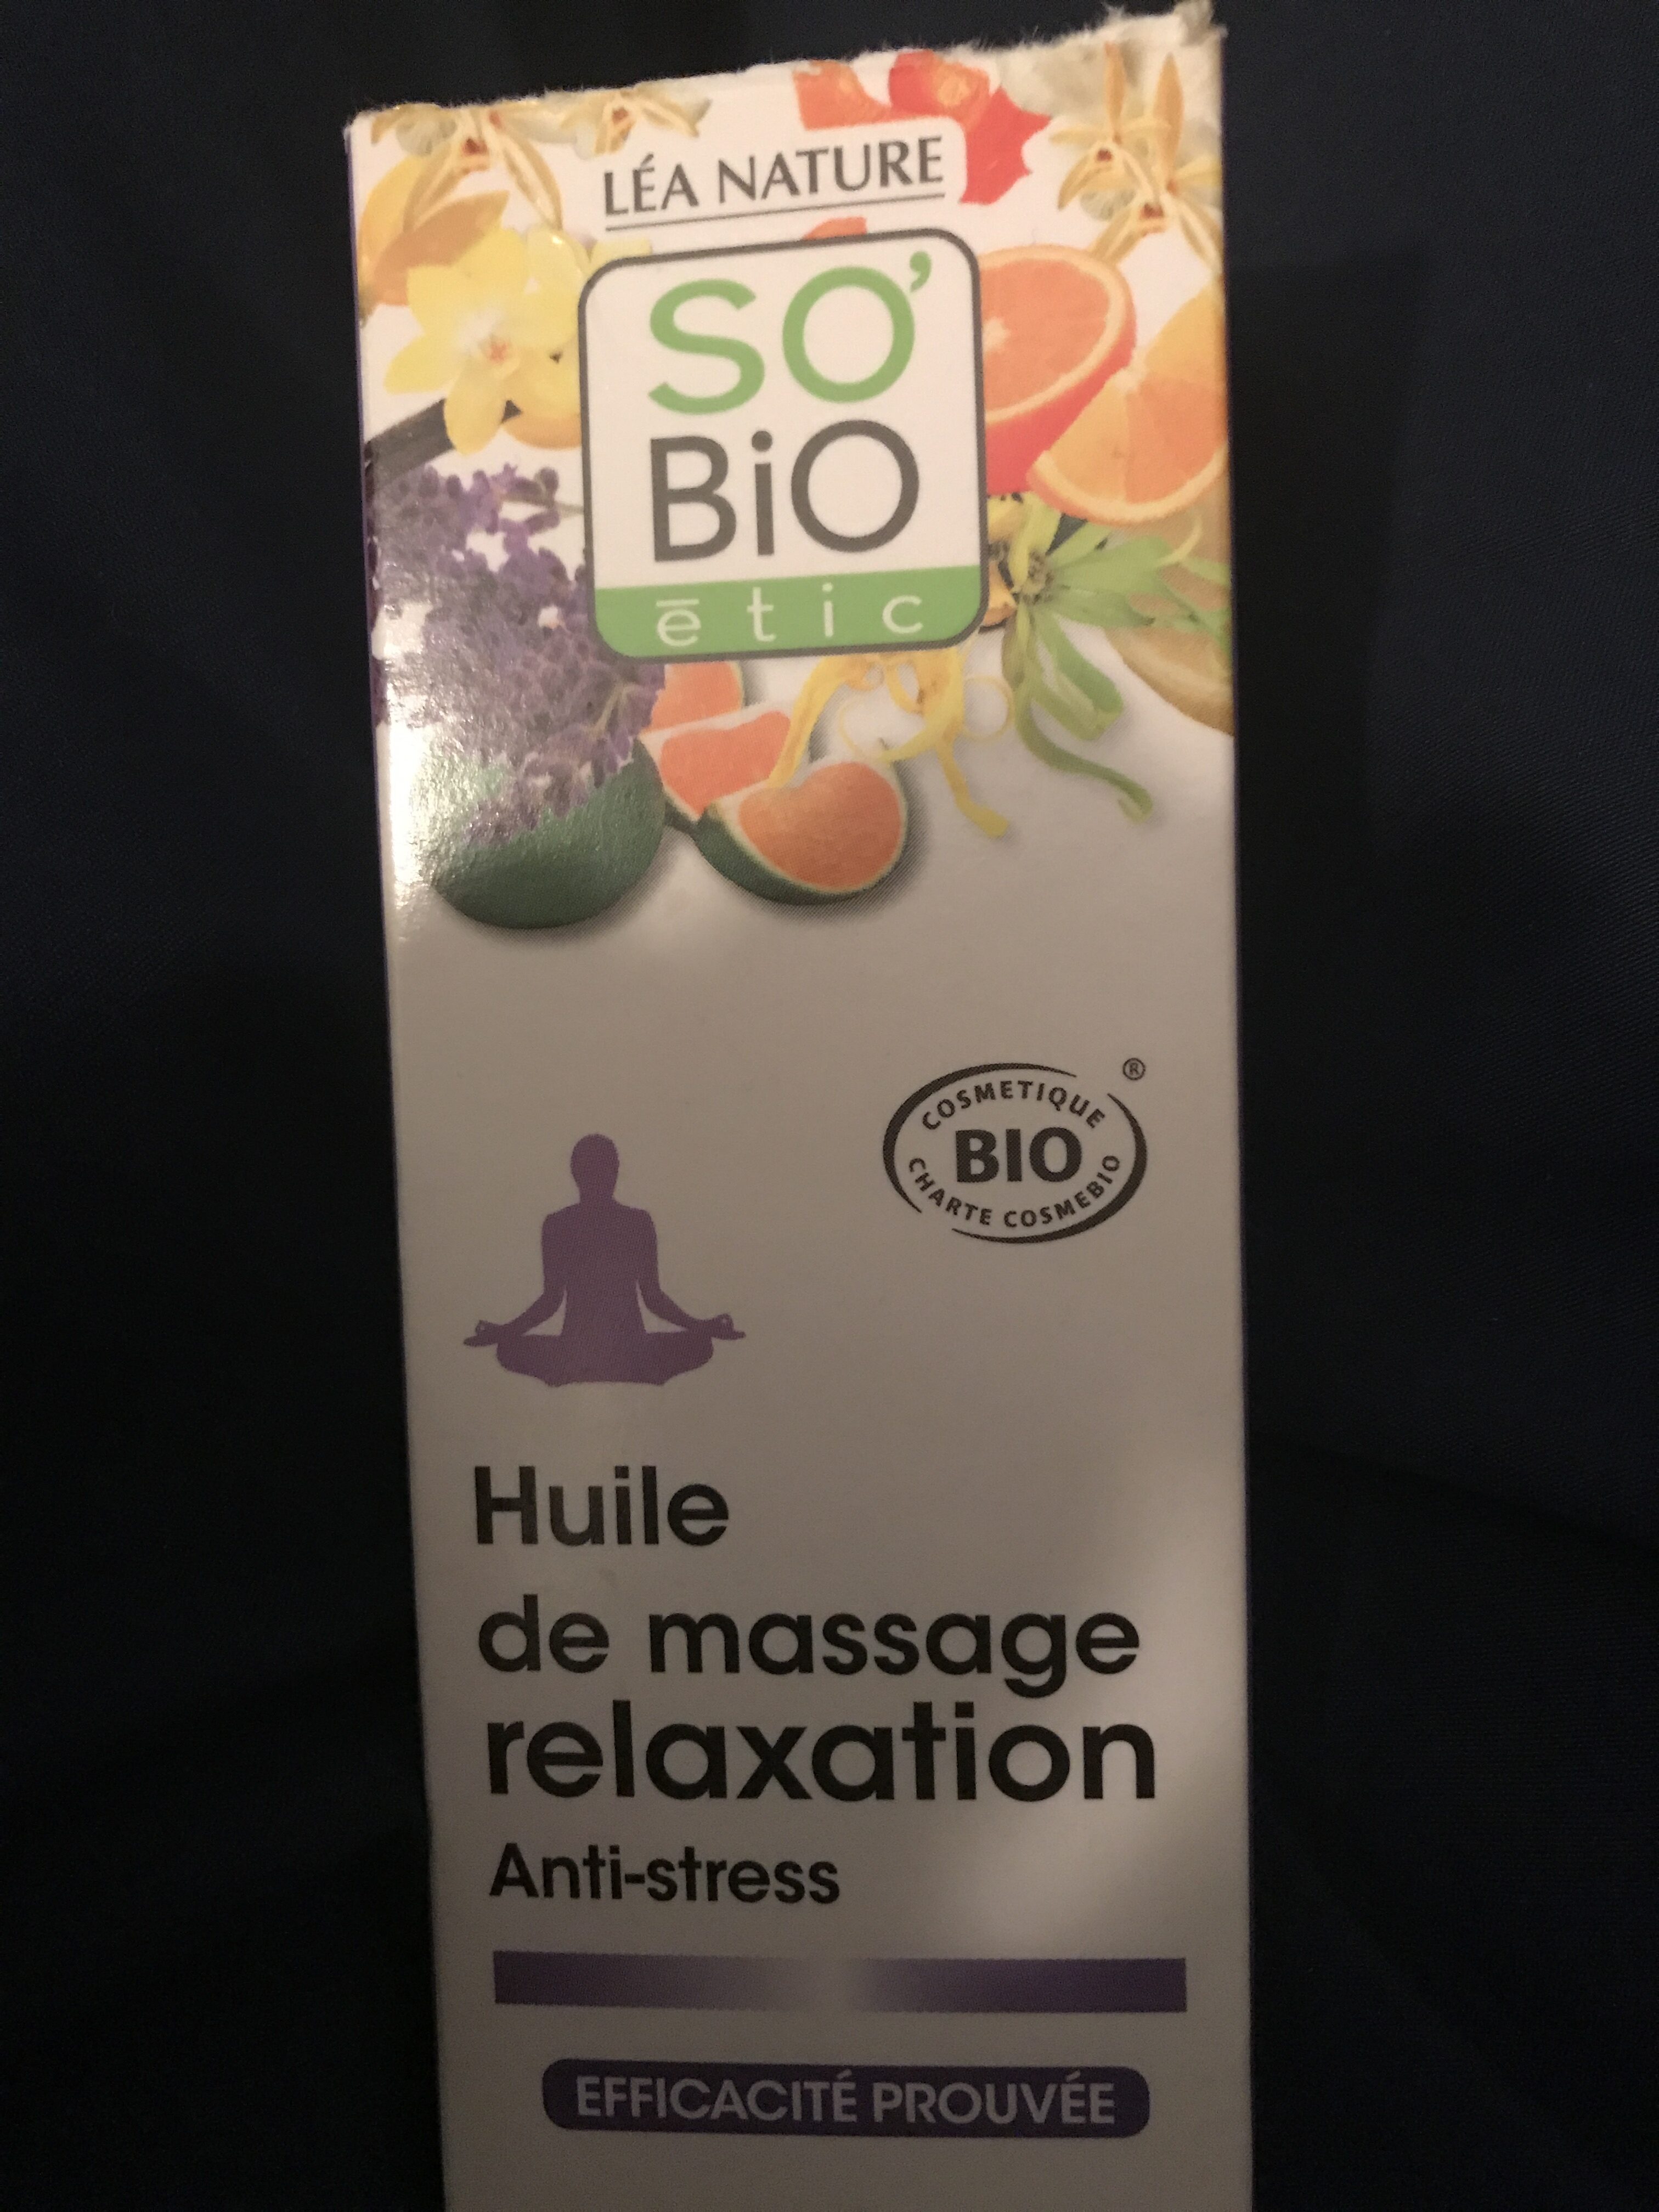 Huile de massage relaxation - Produit - fr